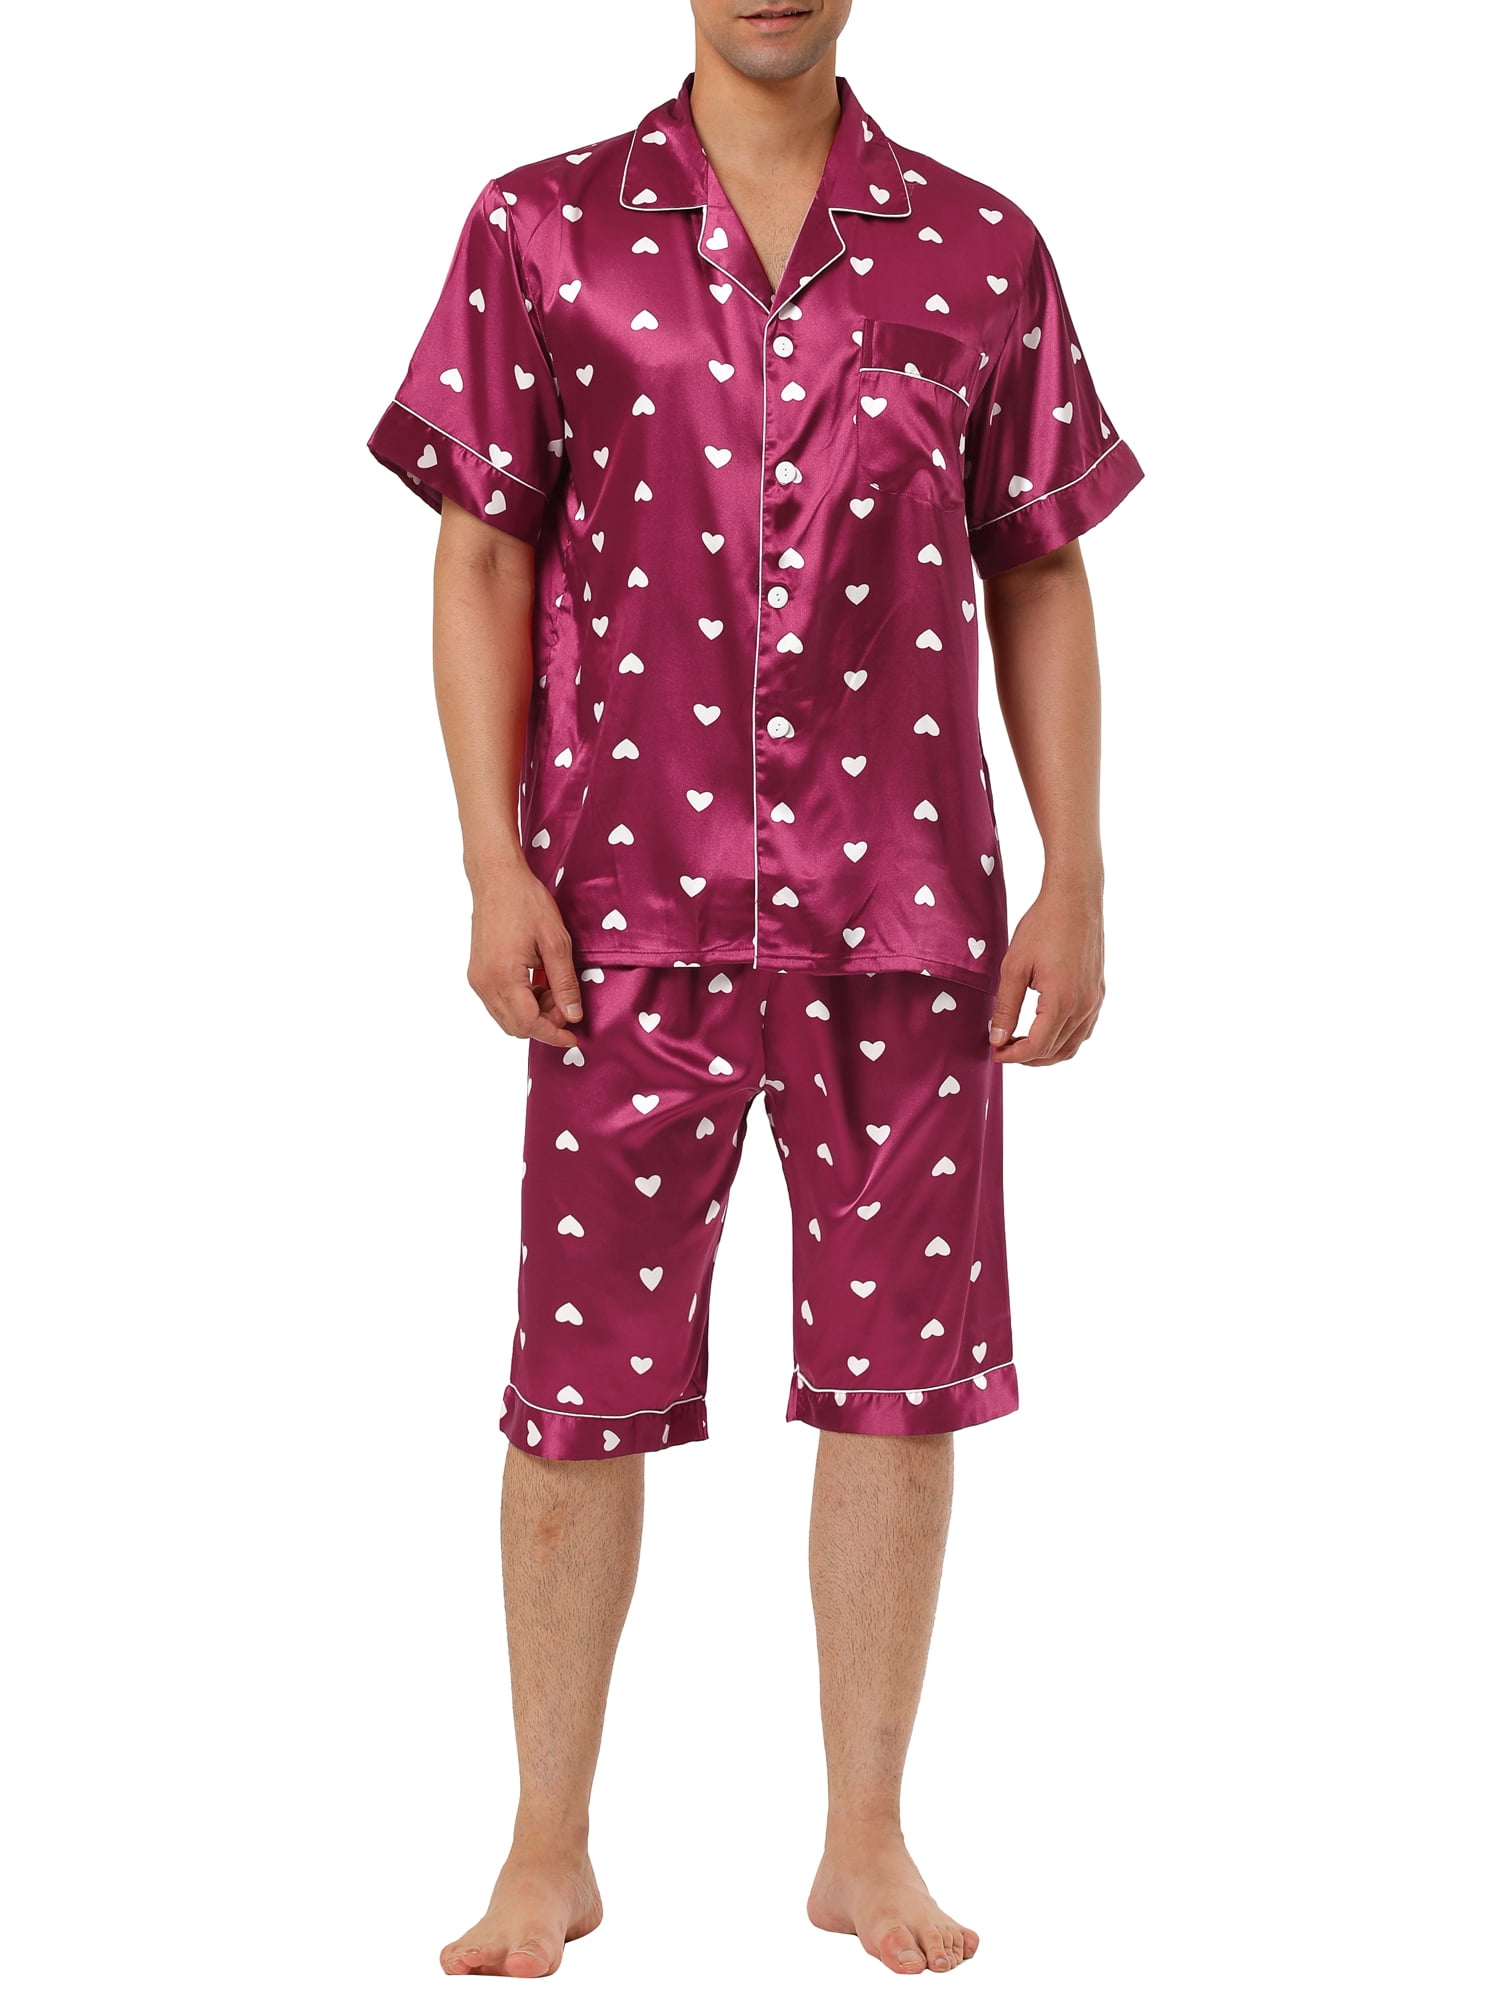 Personalised Initial Pyjamas Loungewear Baby Reveal Dad Gifts Mens PJs